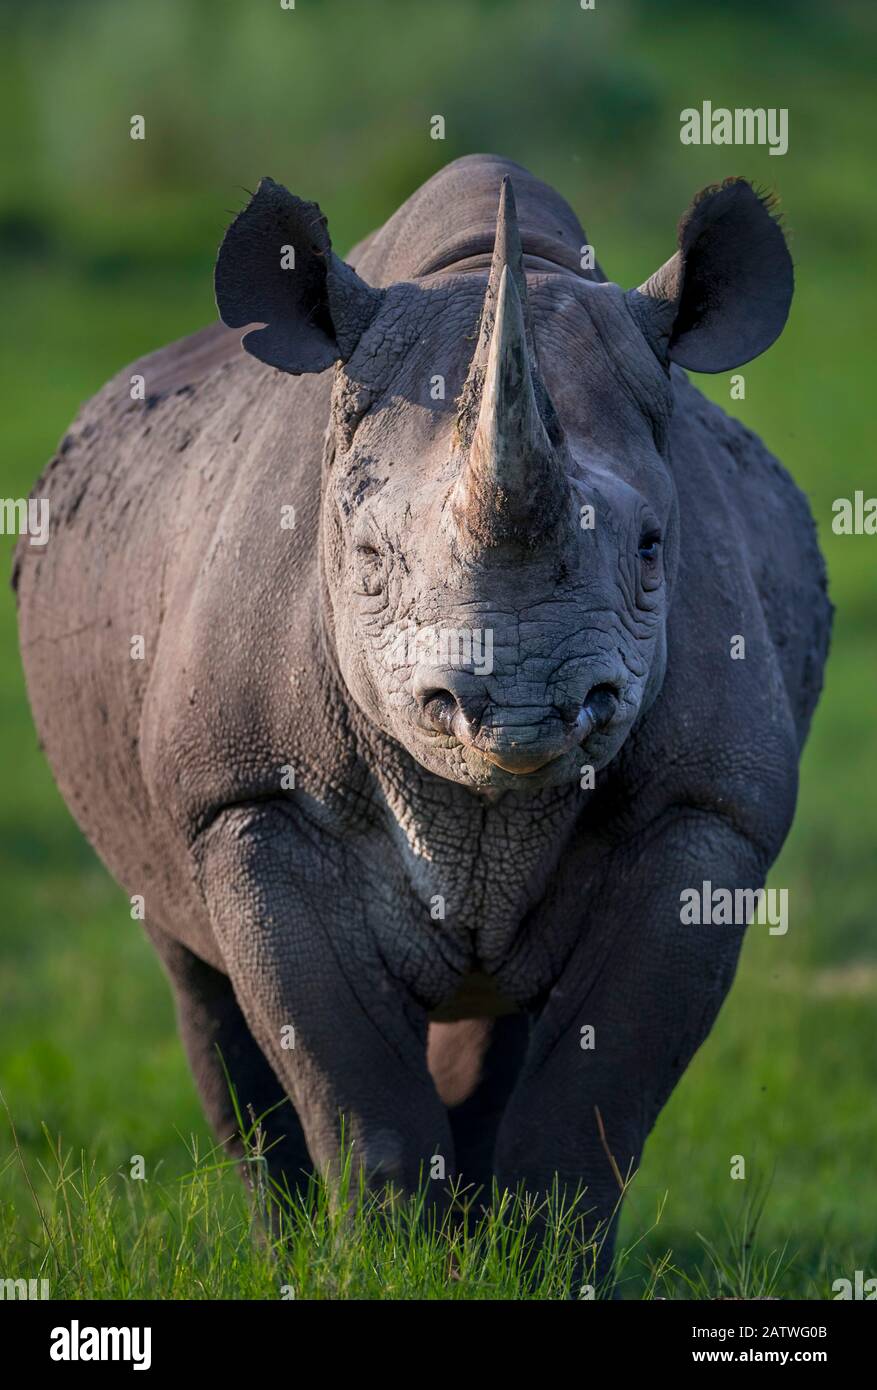 Il rinoceronte nero (Diceros bicornis) si erge in luce serale sull'isola del Capo nel Delta di Okavango, Botswana. Questo rinoceronte è stato rilasciato nel Delta dell'Okavango come parte degli sforzi per ricostruire le popolazioni di rinoceronte che il Botswana ha perso per bracconare e cacciare dai primi 1990s. Foto Stock